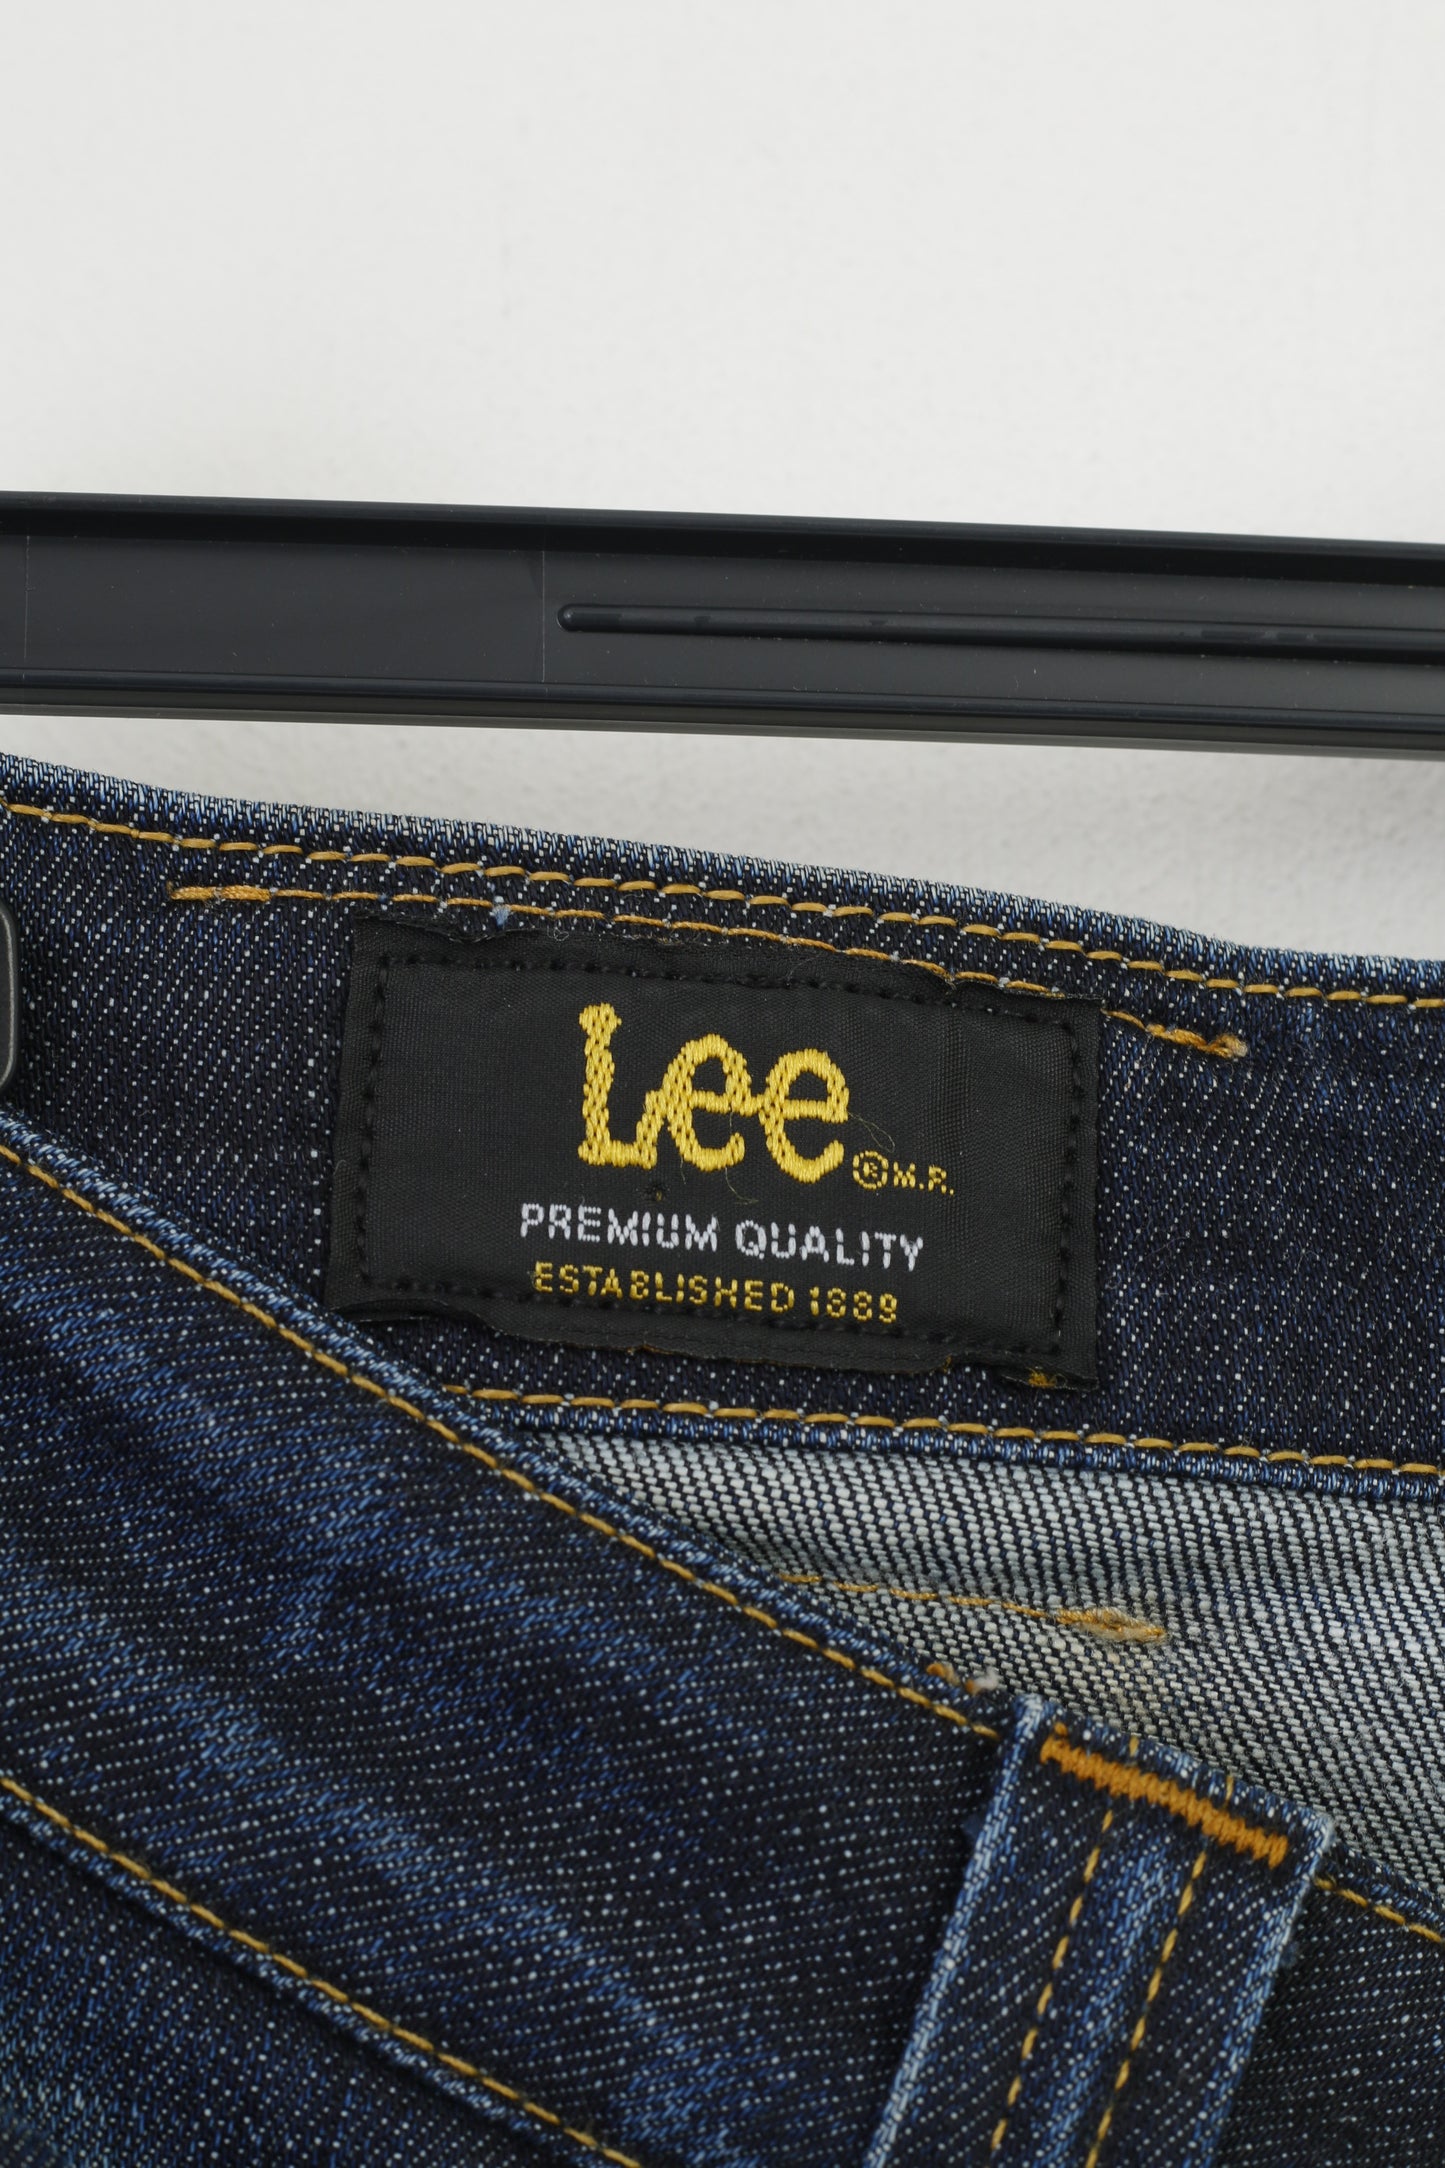 Lee Women 30 Pantalons Jeans en coton bleu marine Denim Pantalon vintage de qualité supérieure